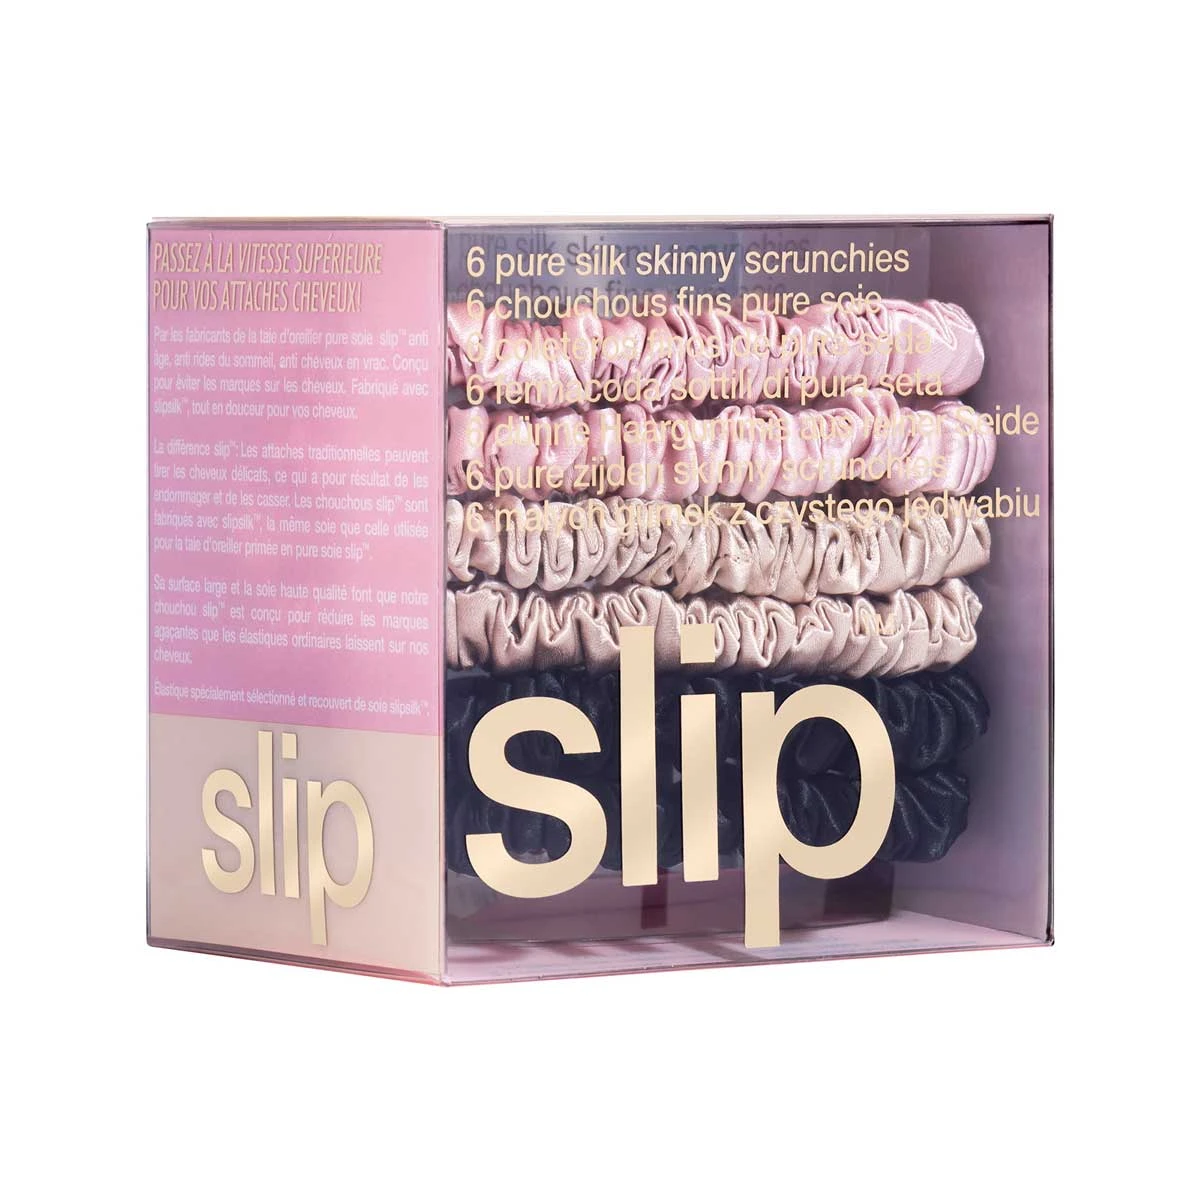 Slip Silk 舒适真丝束发发绳发圈 6个 Pink, Caramel & Black 商品